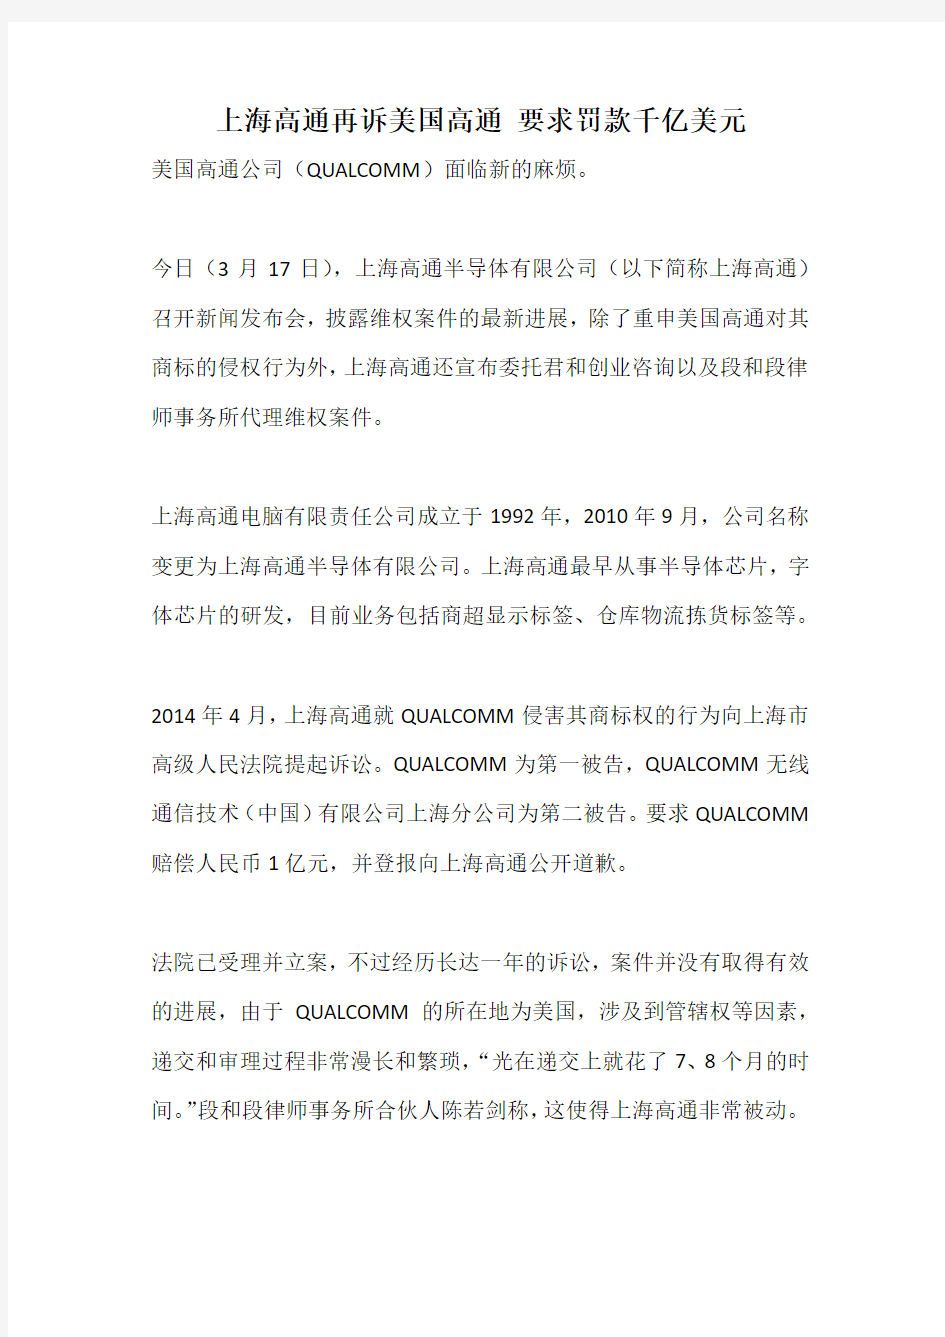 上海高通再诉美国高通 要求罚款千亿美元